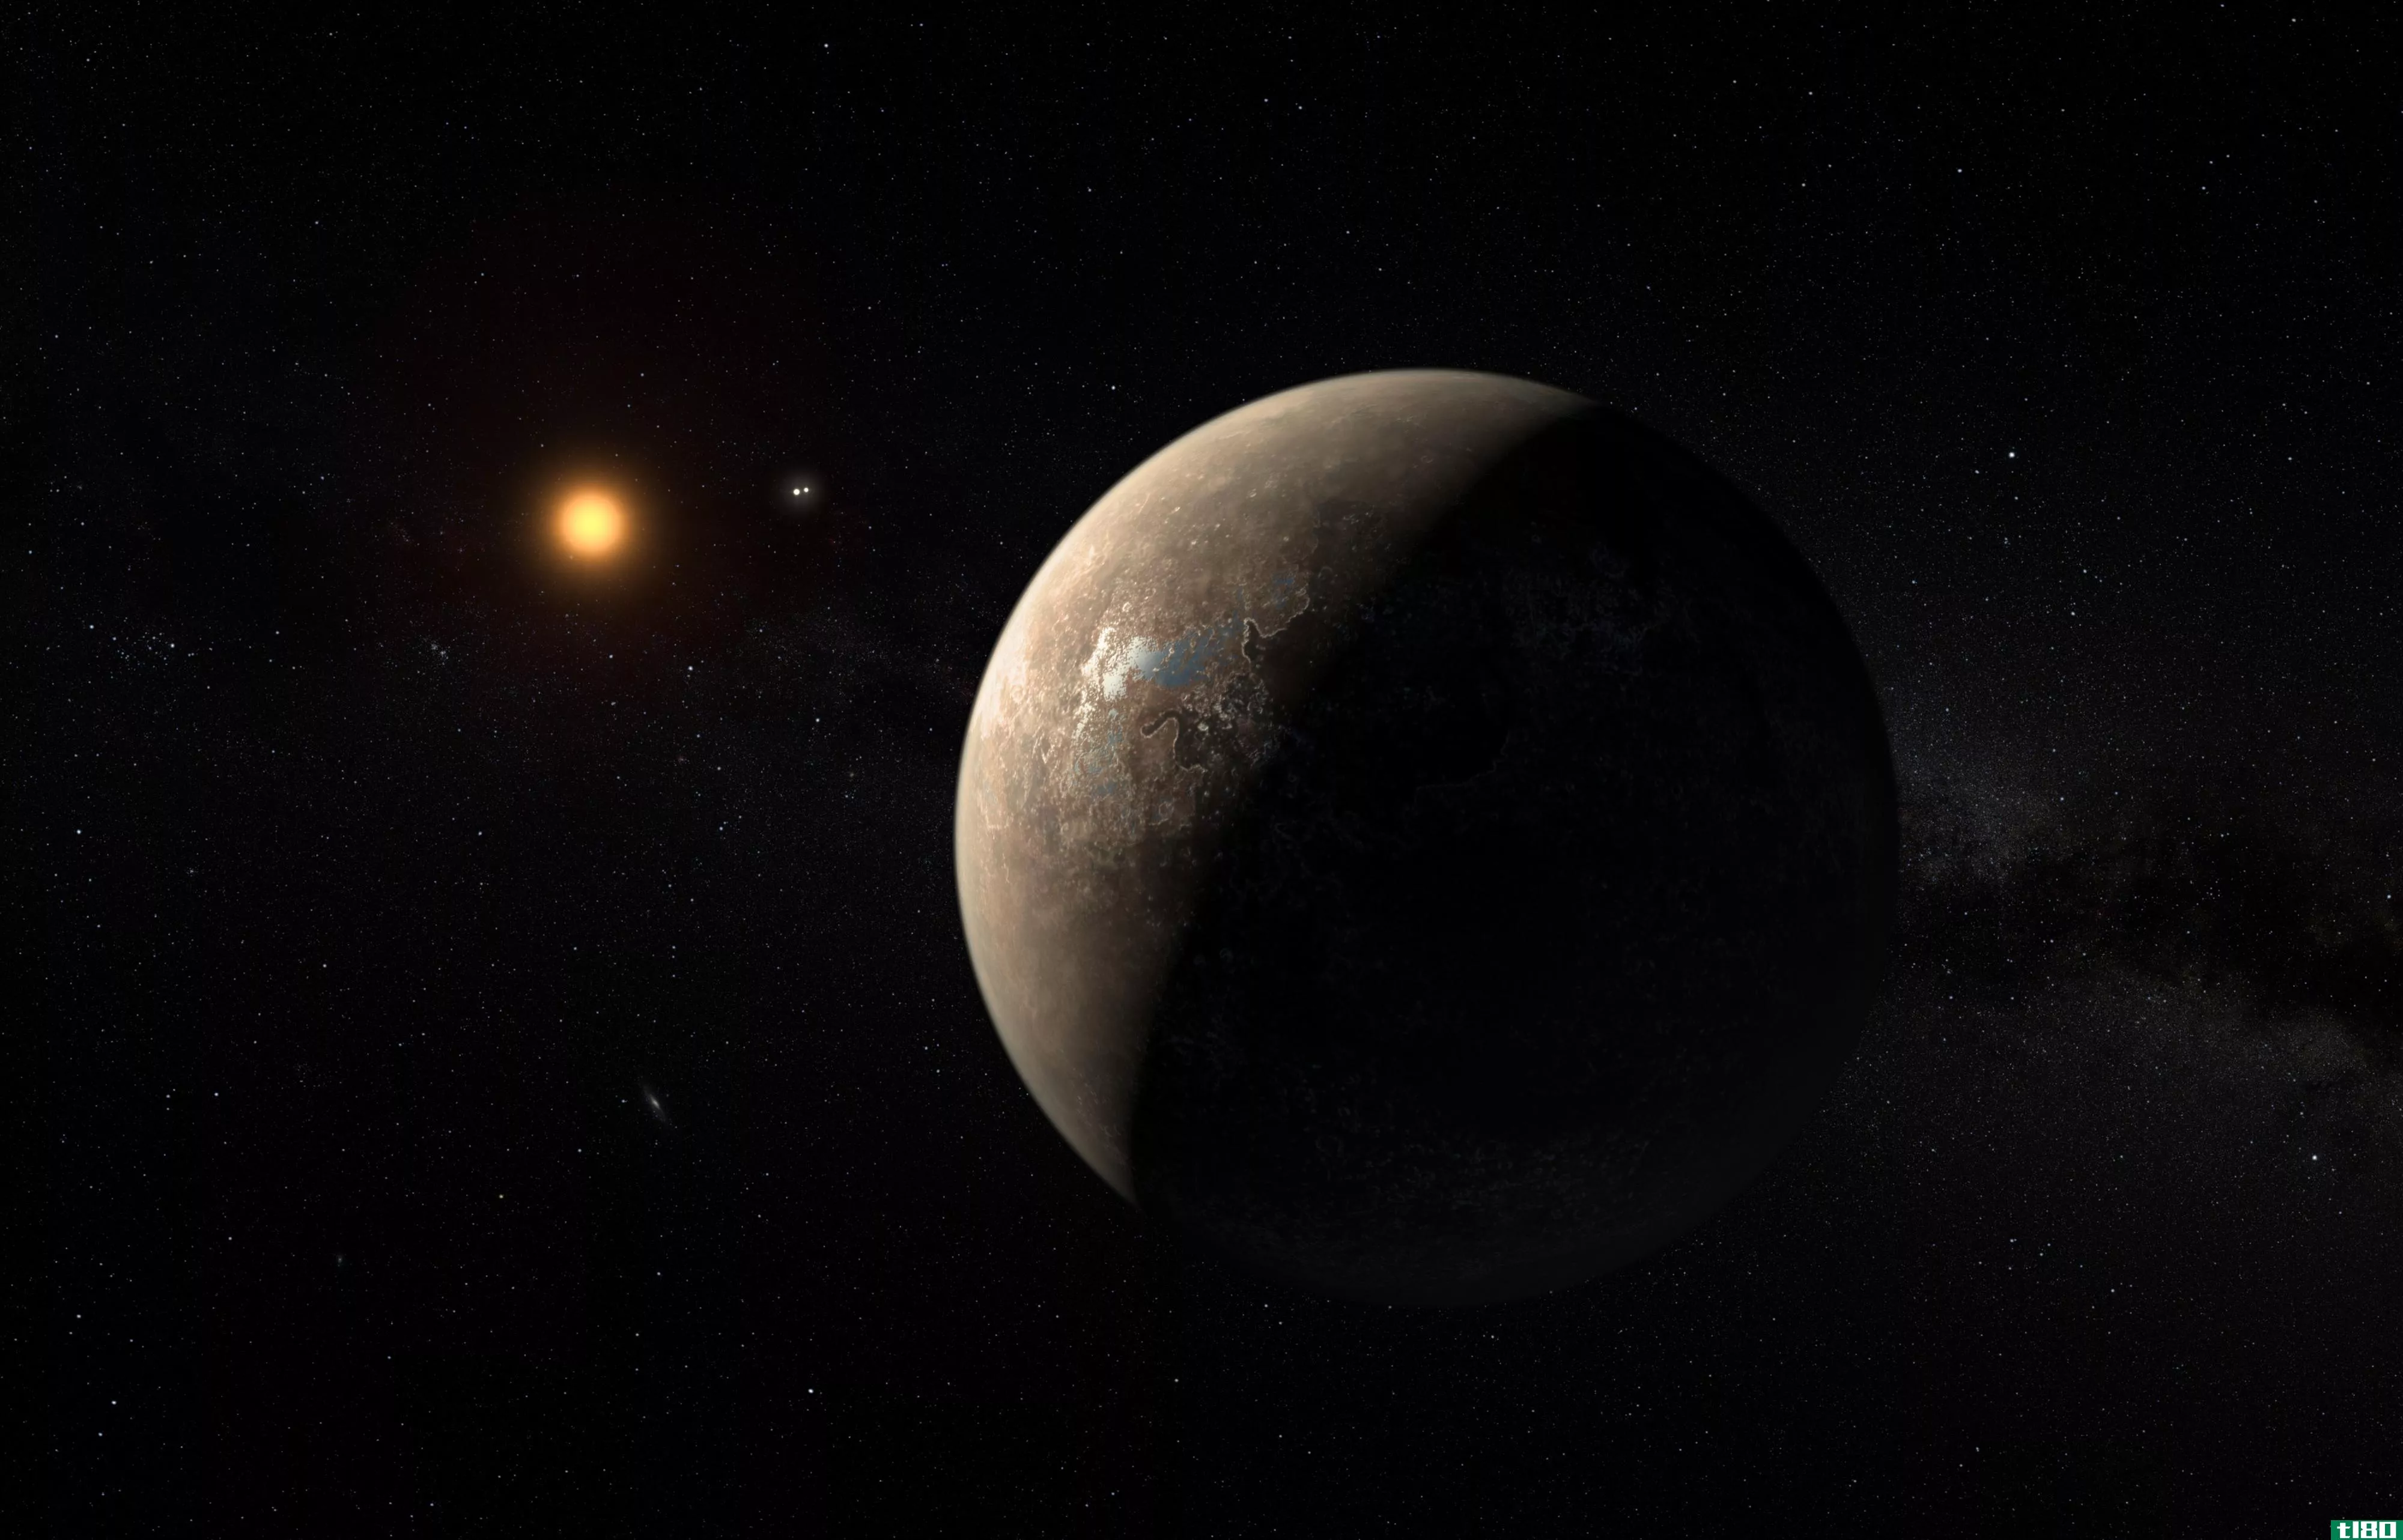 系外行星proxima b具有“潜在的可居住性”，那么如果它存在的话，我们将如何找到生命呢？